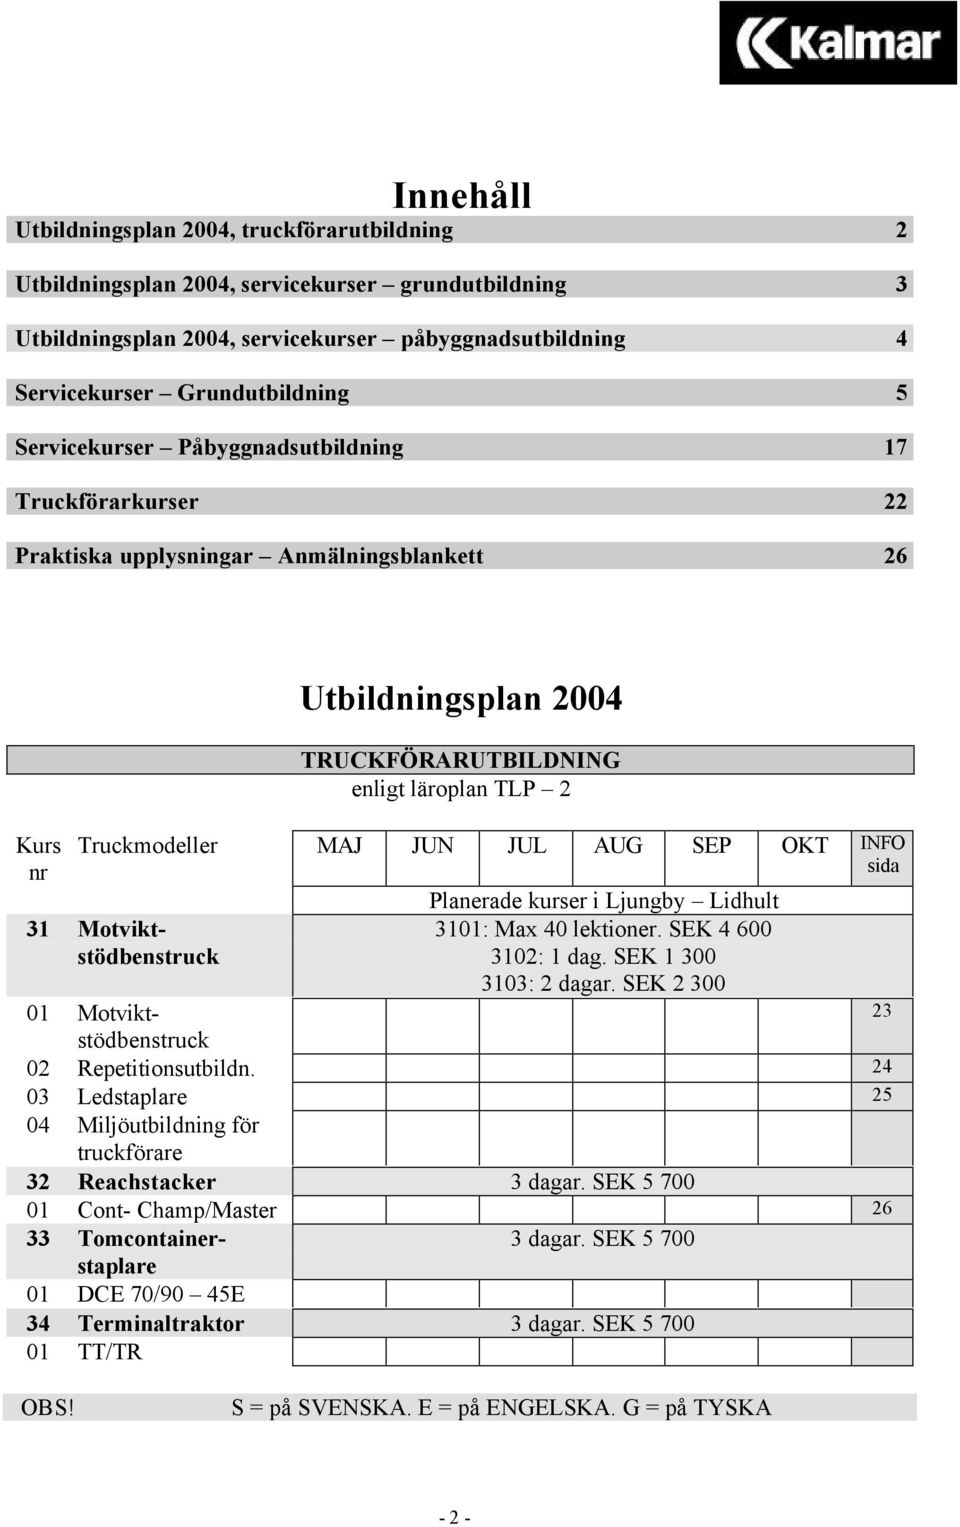 JUL AUG SEP OKT INFO sida 31 Motviktstödbenstruck Planerade kurser i Ljungby Lidhult 3101: Max 40 lektioner. SEK 4 600 3102: 1 dag. SEK 1 300 3103: 2 dagar.